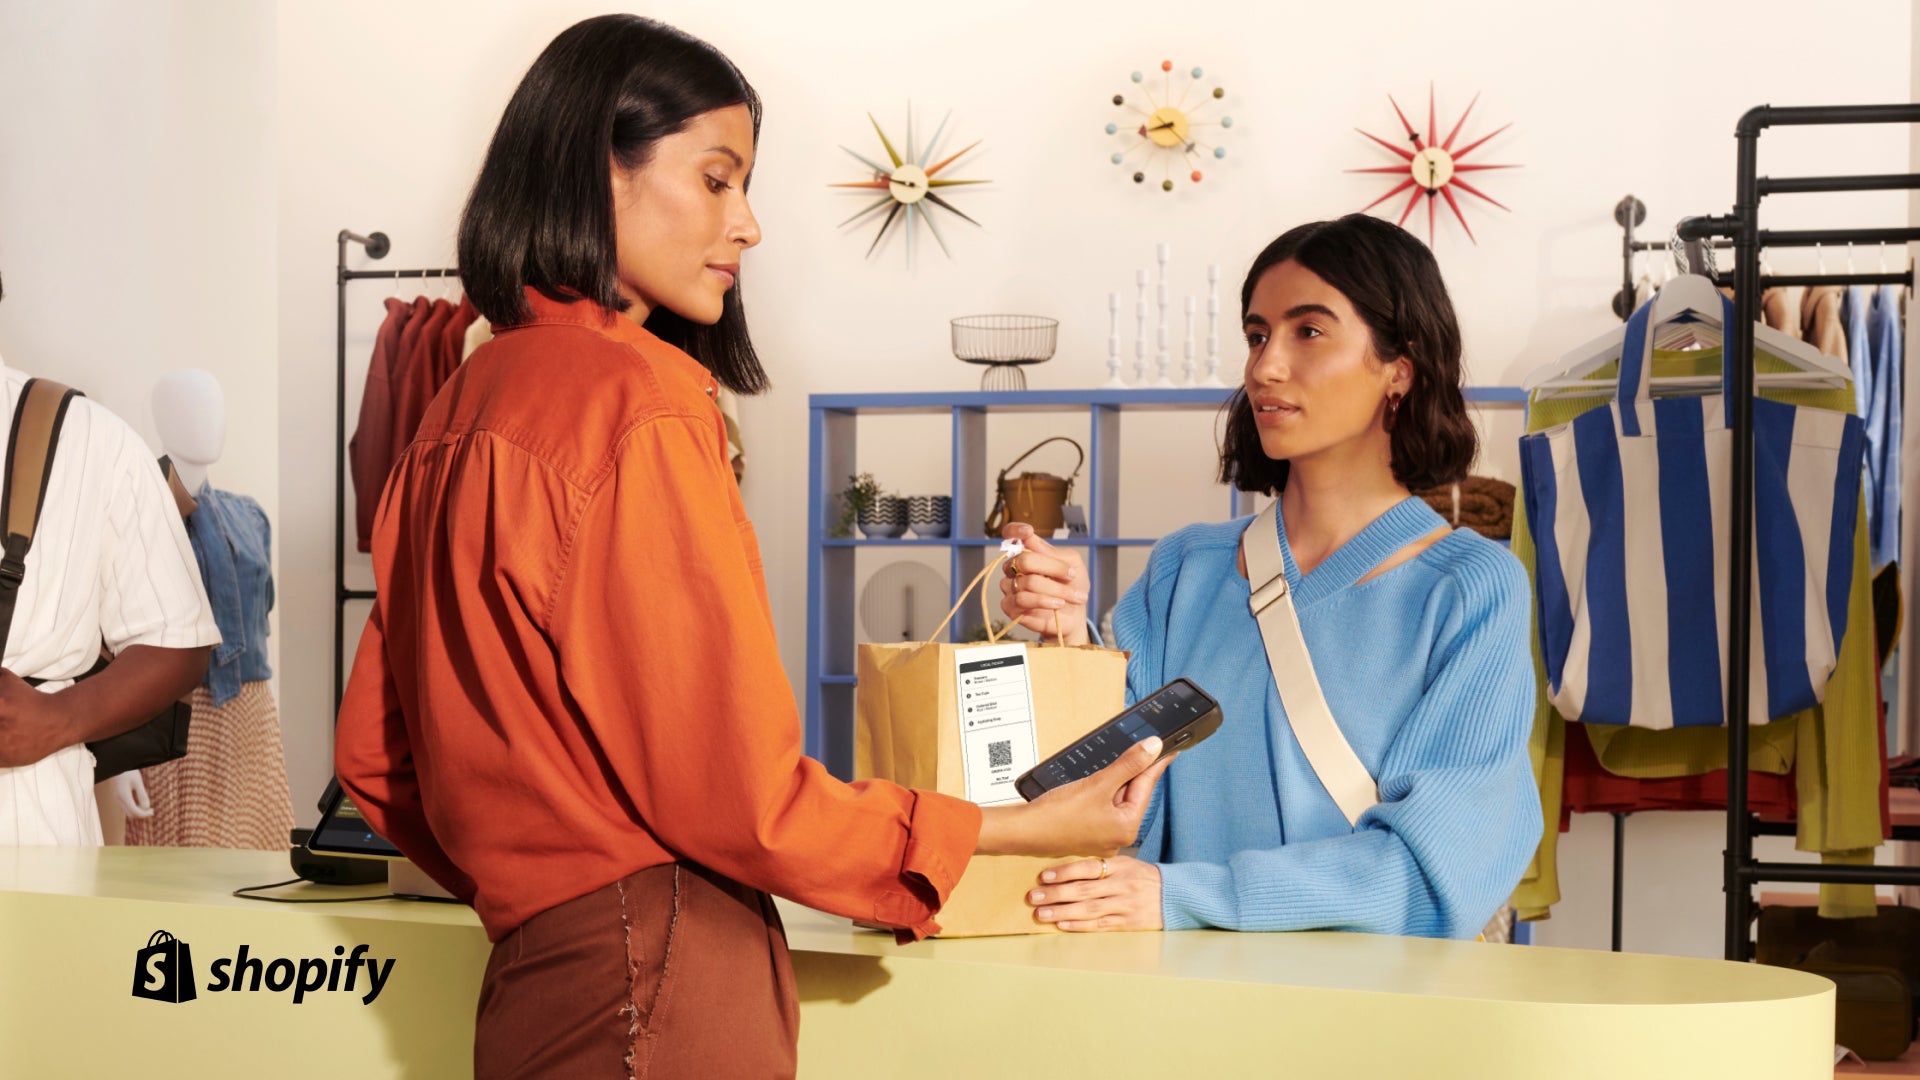 Mujer con un suéter azul en una caja tomando su bolso mientras otra mujer con una camisa naranja mira su POS portátil